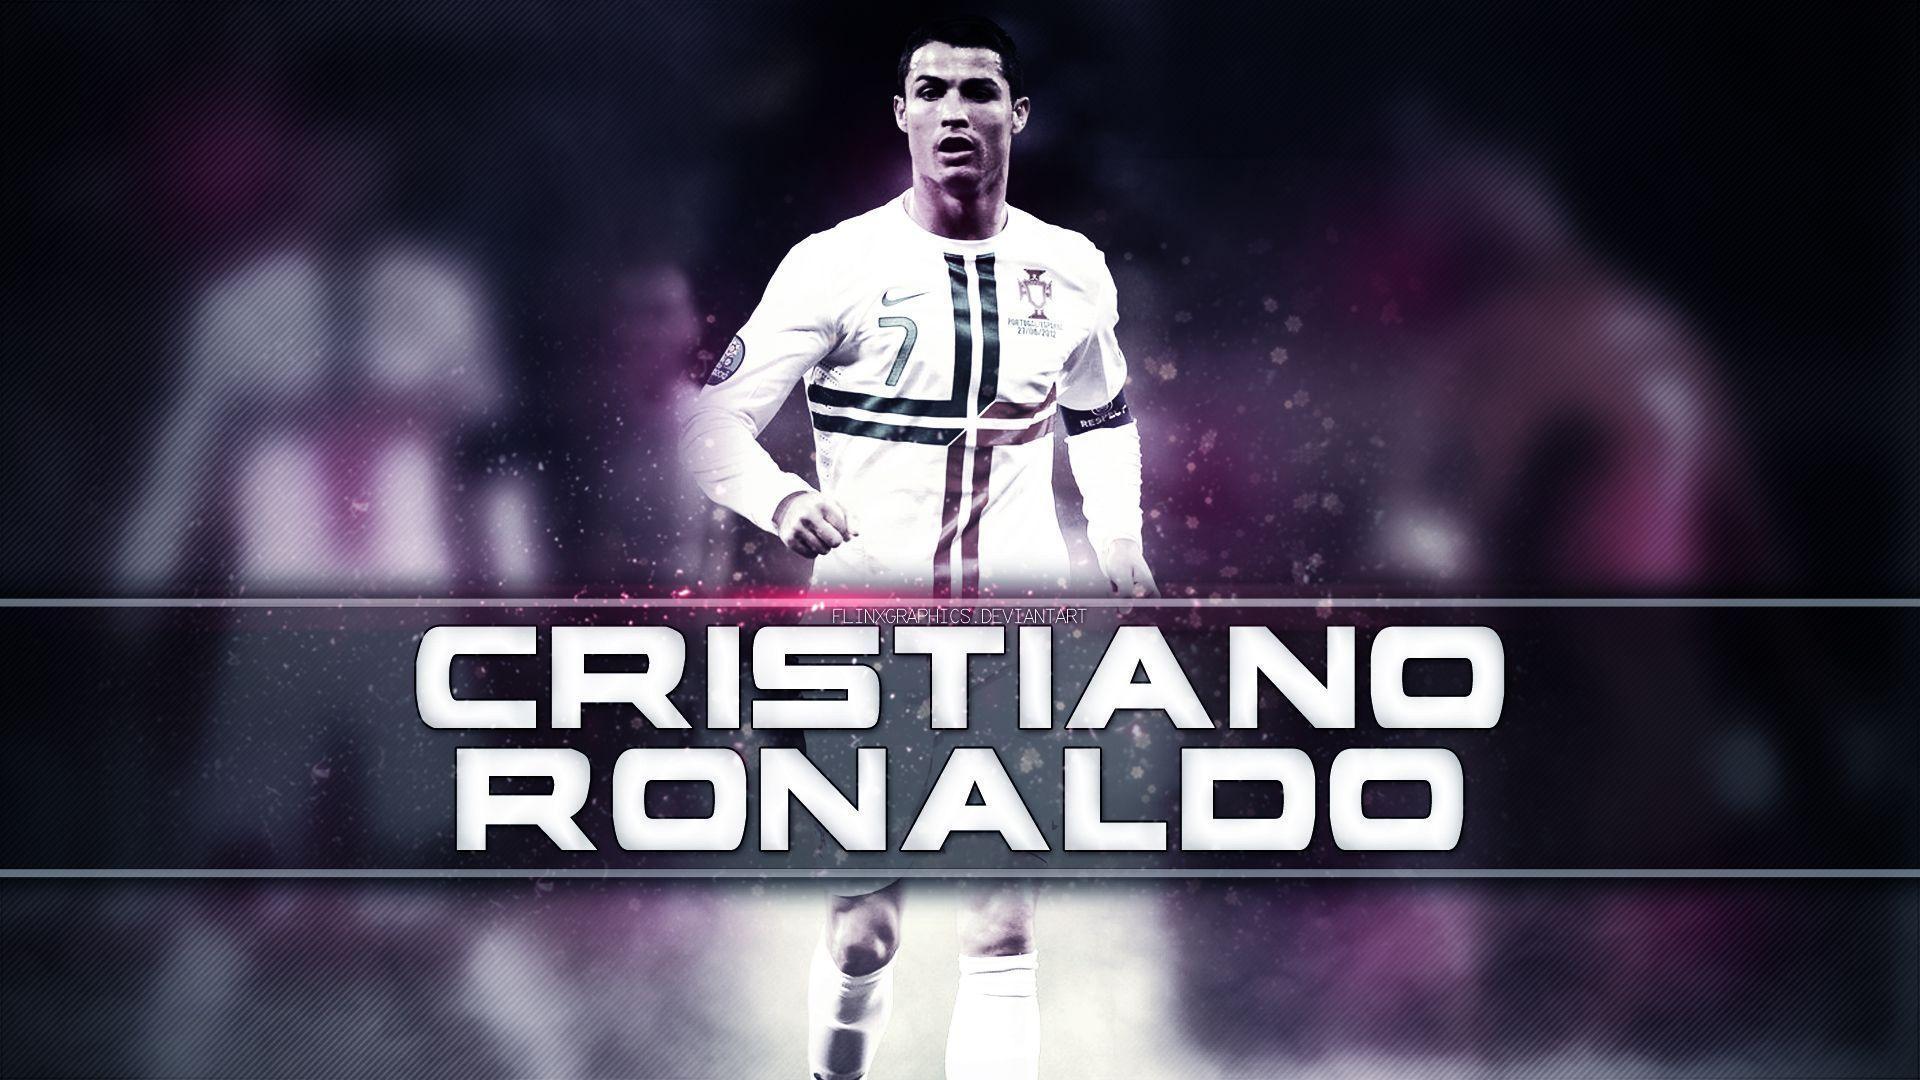 SD Cristiano Ronaldo 10 Wallpaper: Players, Teams, Leagues Wallpaper